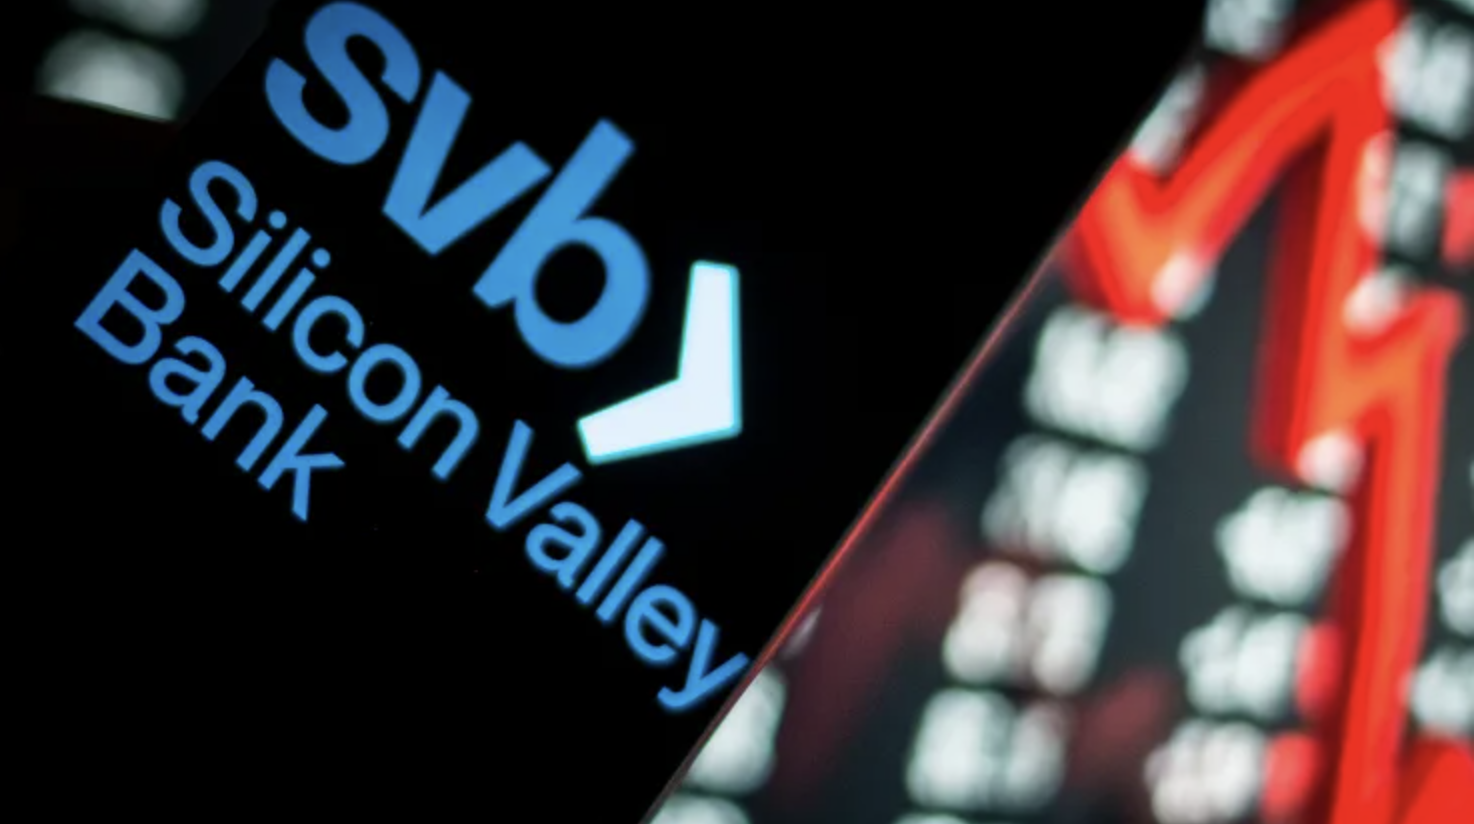 Ngân hàng First Citizens đồng ý mua lại 72 tỷ USD tài sản của SVB - 1